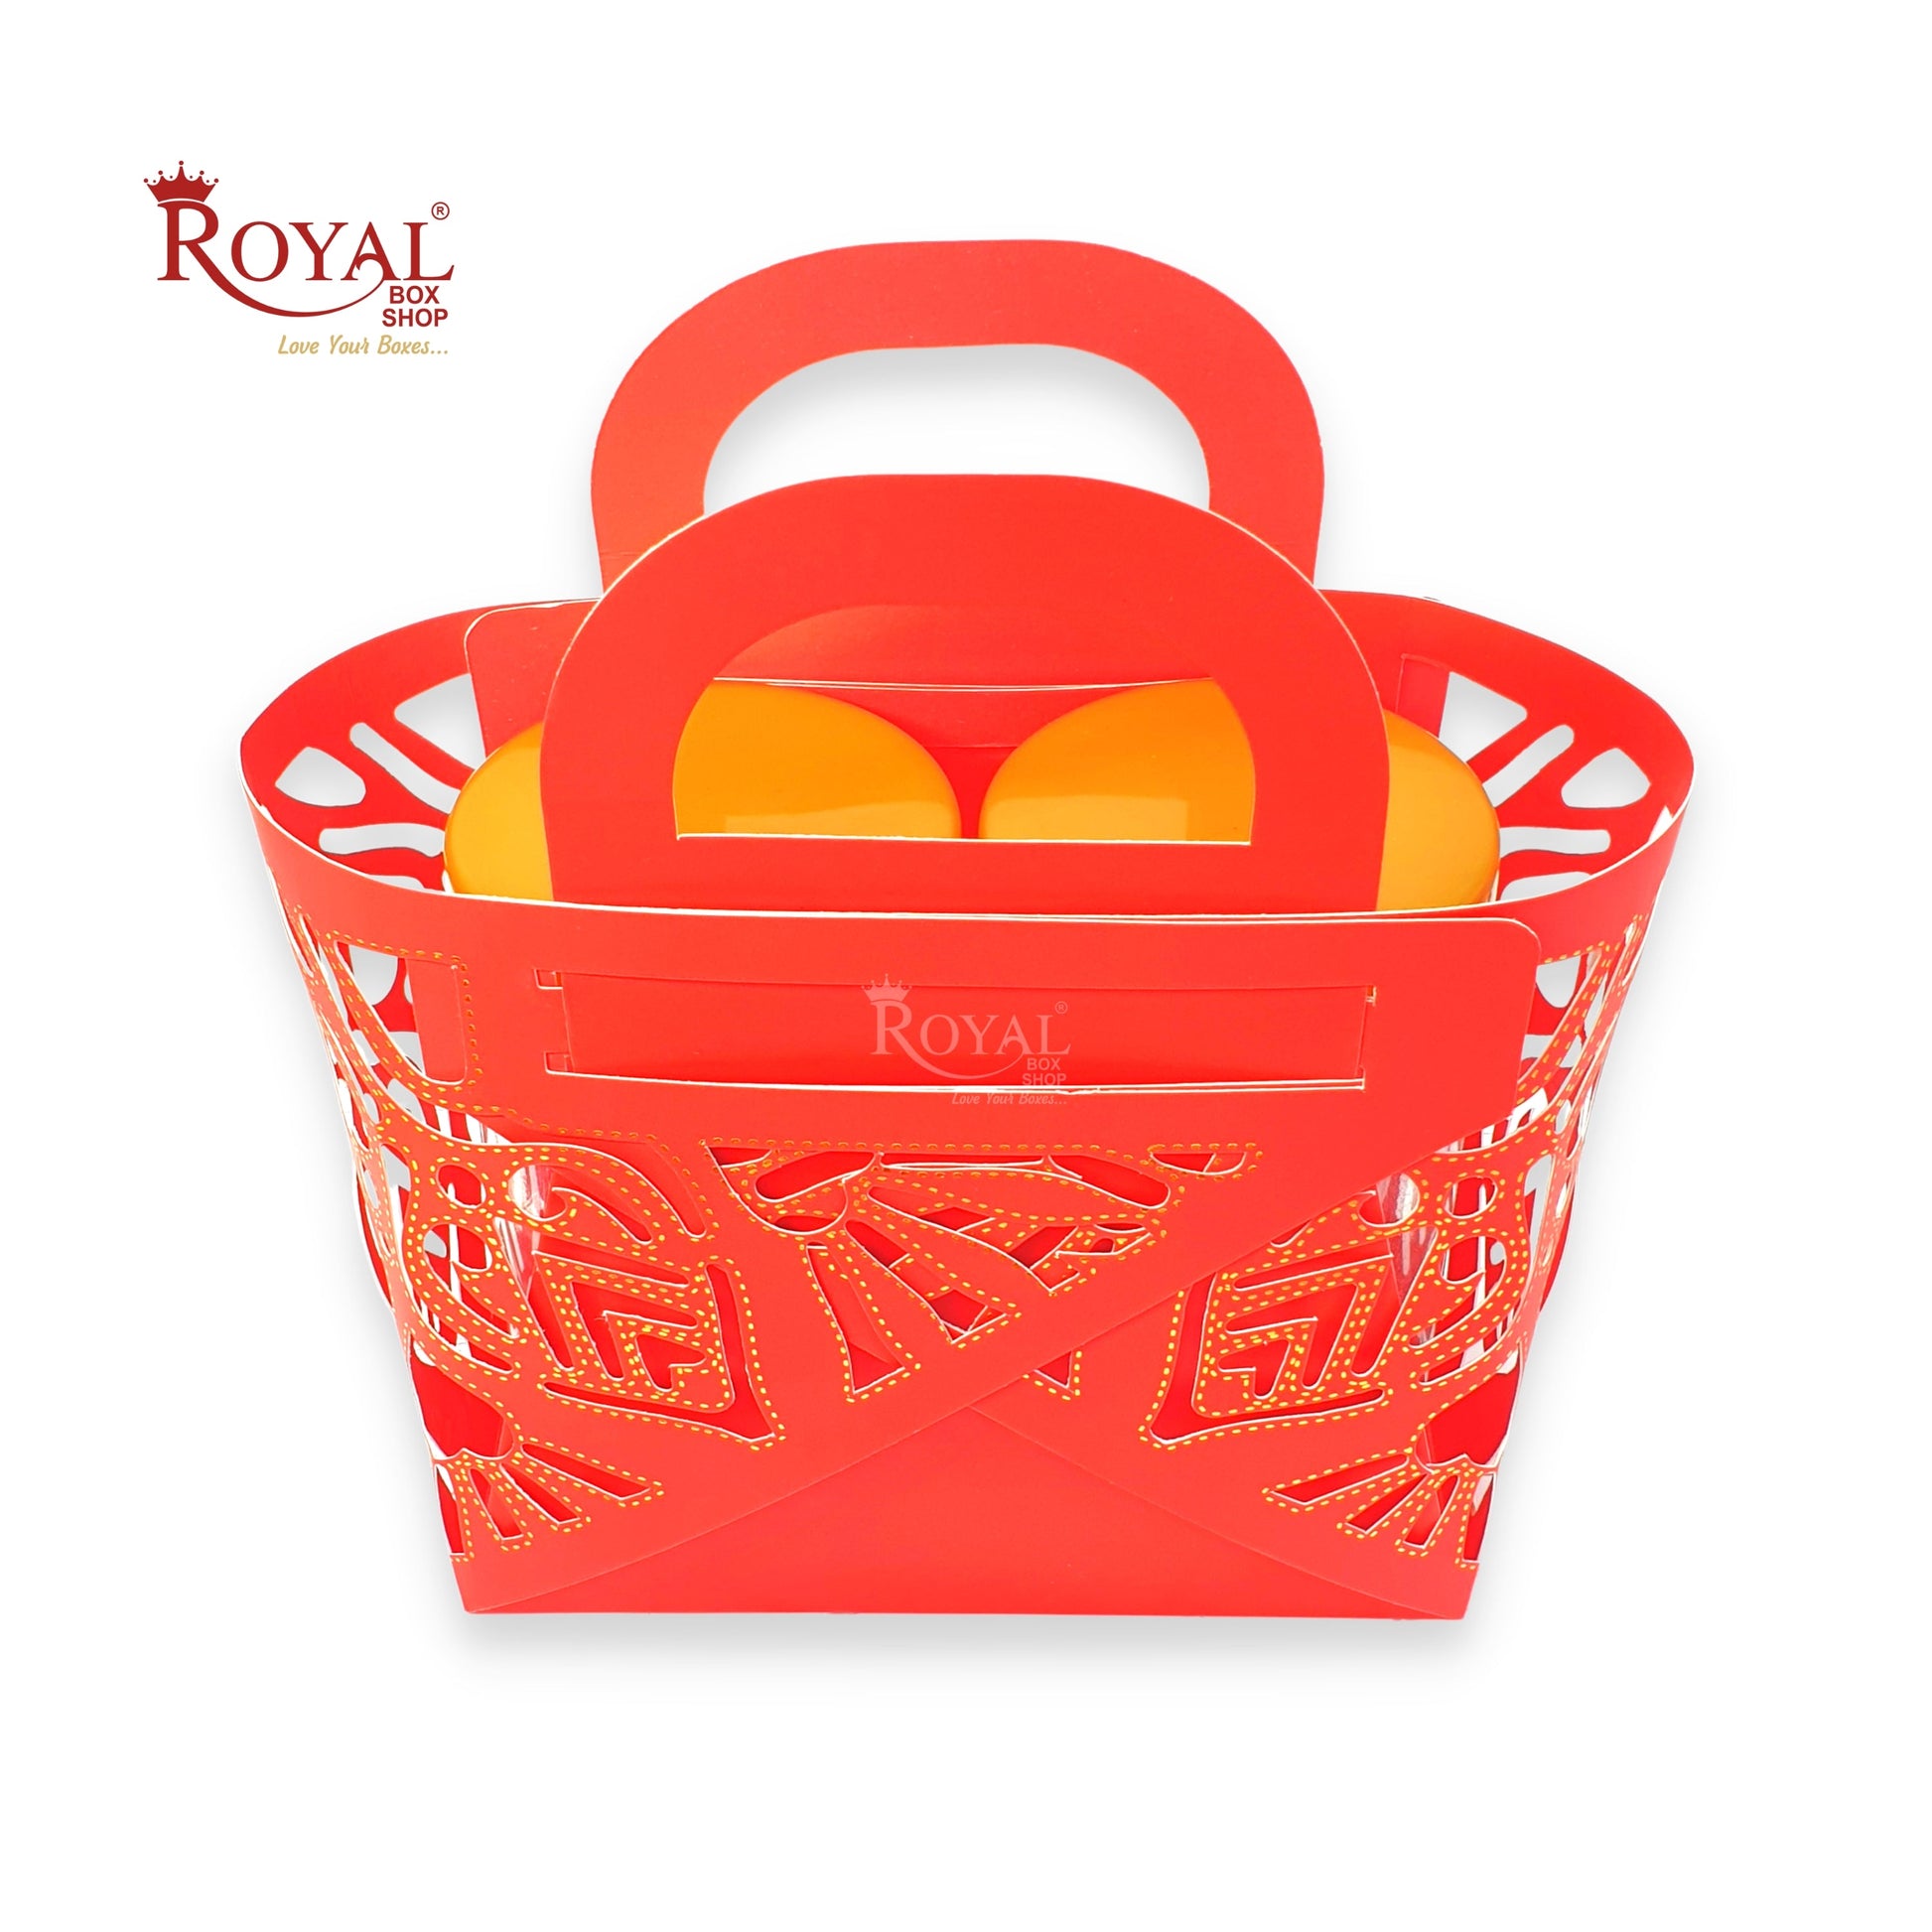 Royal 2 Jar Gift Hamper Bags I Laser Cut Gold Foiling I Red Color I Wedding, Corporate Birthday Return  Gifting Hamper Bags Royal Box Shop